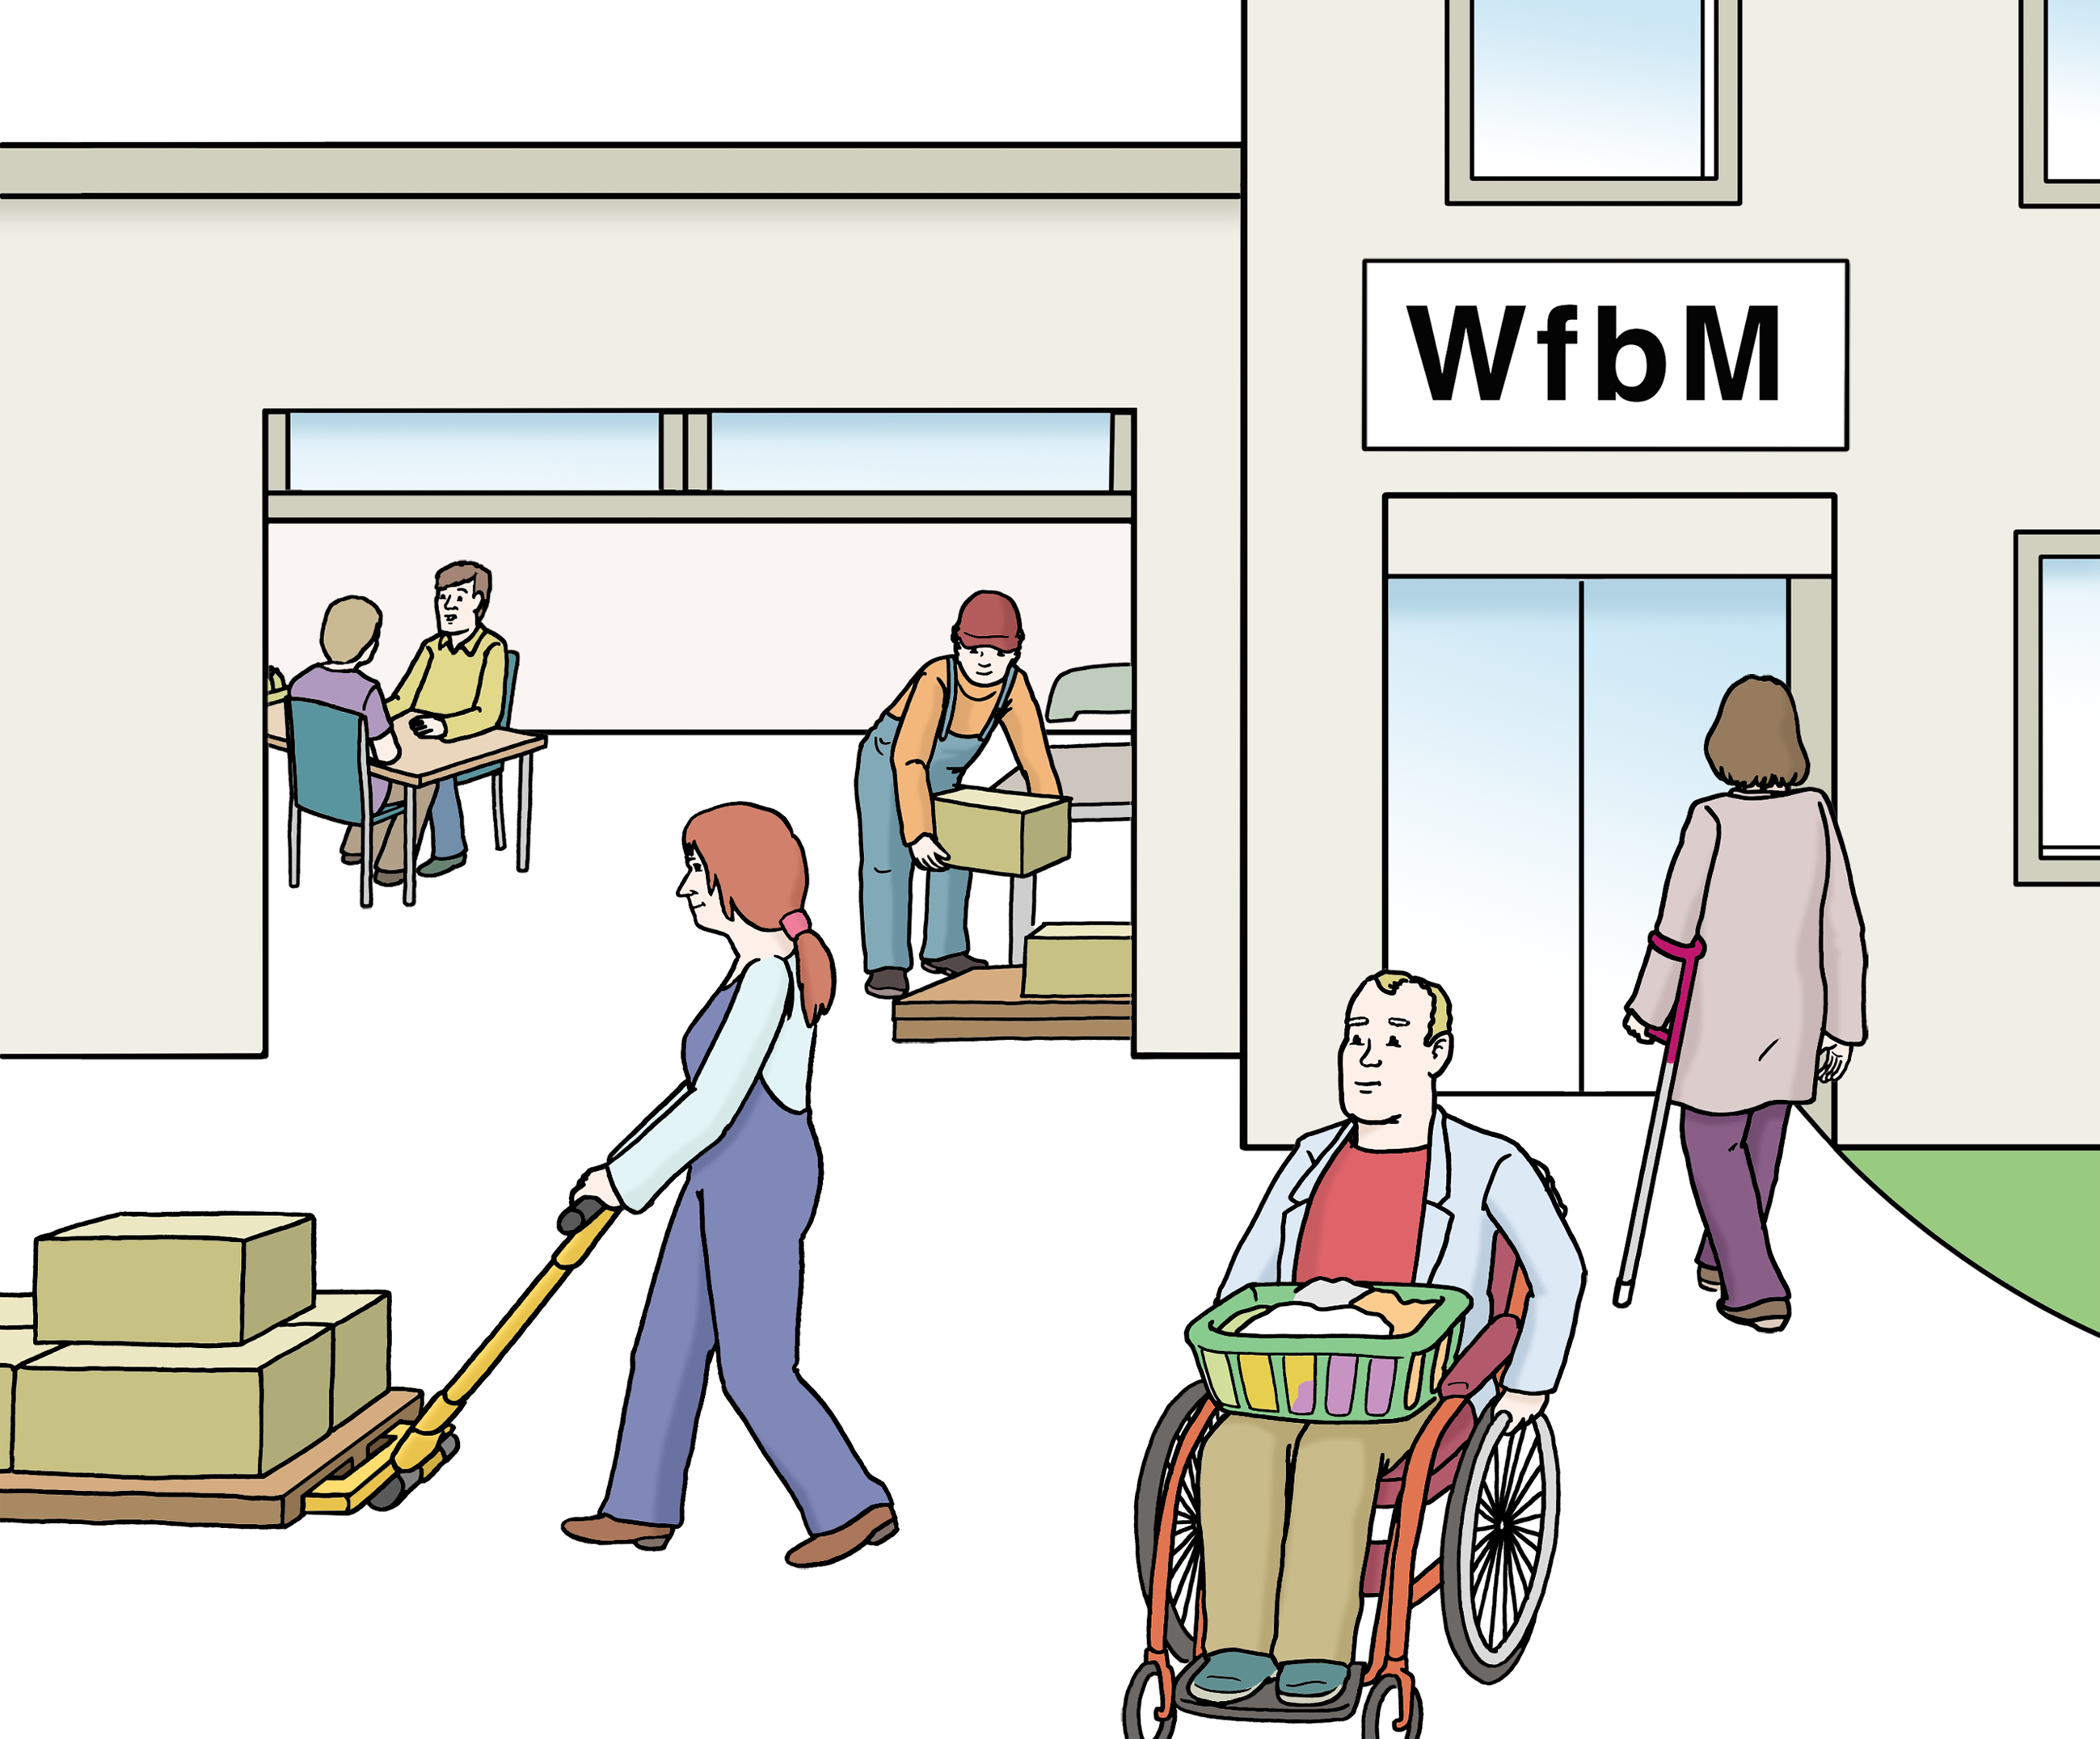 Vor einem Gebäude sieht man verschiedene Menschen bei der Arbeit. Auf dem Gebäude steht das Schild "WfbM".